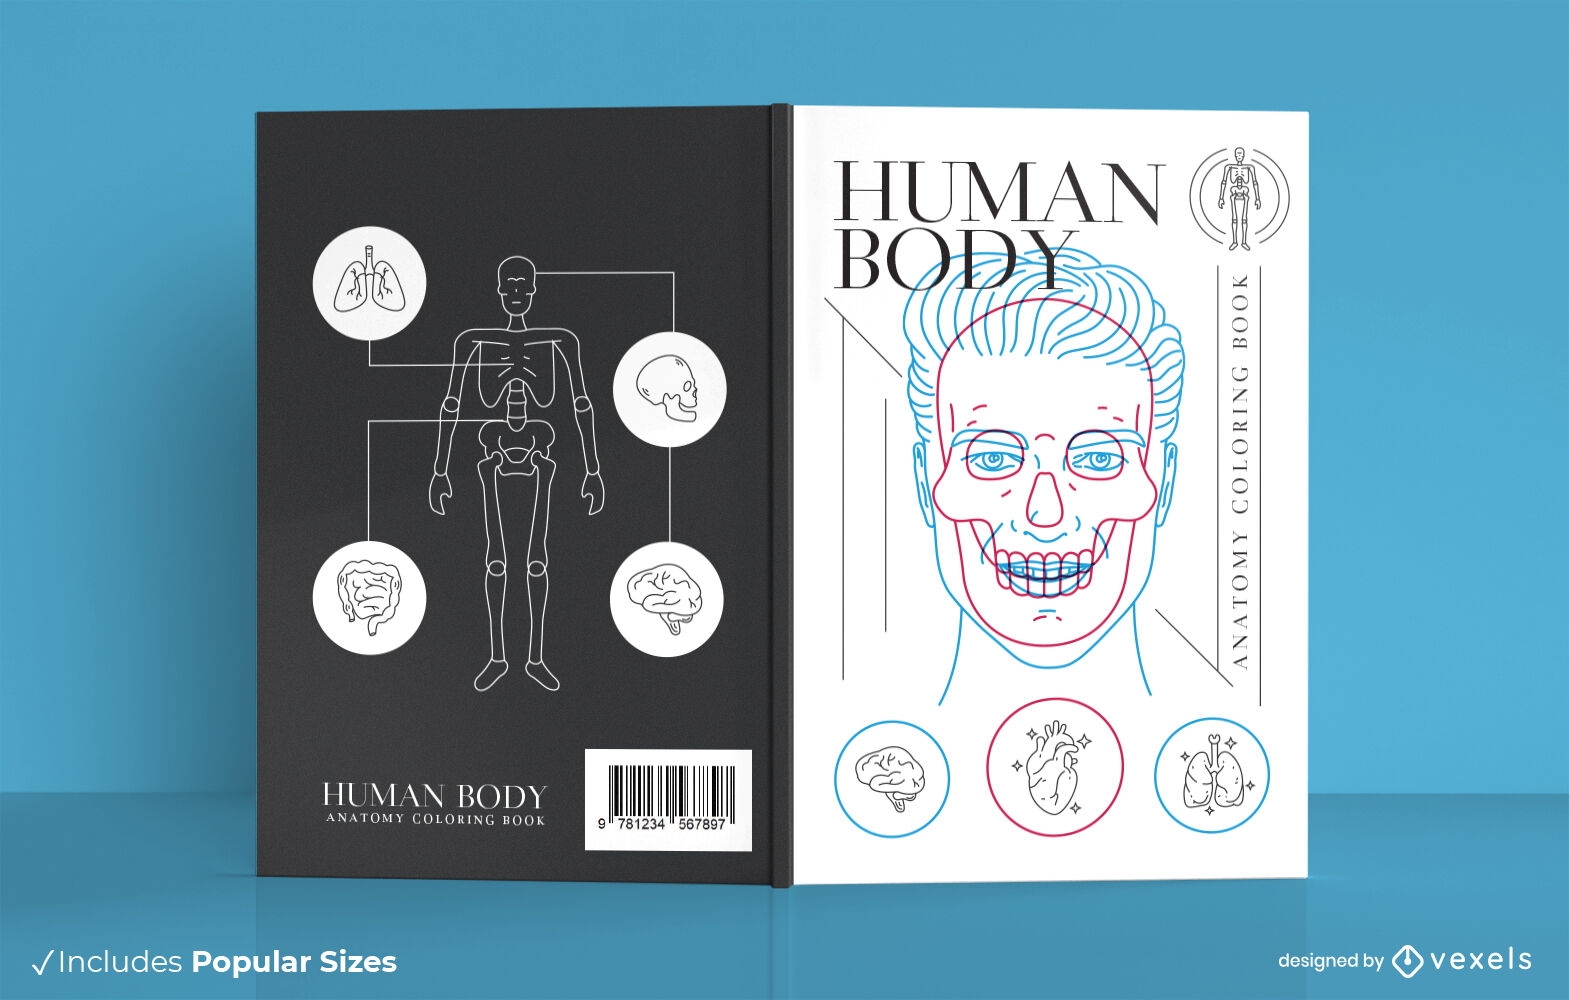 Anatomy book cover design